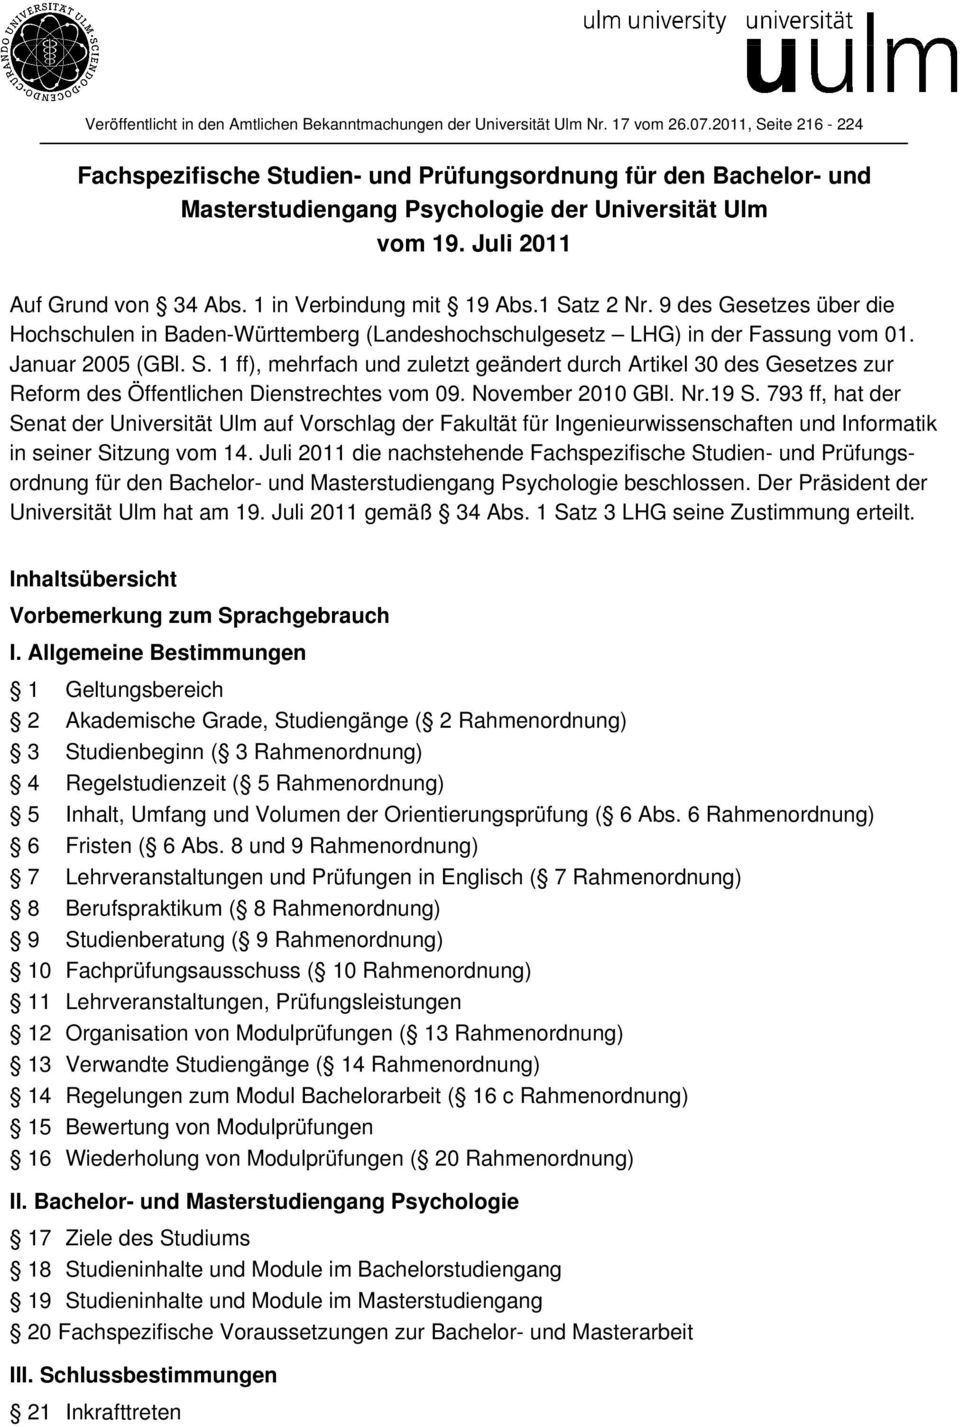 1 in Verbindung mit 19 Abs.1 Satz 2 Nr. 9 des Gesetzes über die Hochschulen in Baden-Württemberg (Landeshochschulgesetz LHG) in der Fassung vom 01. Januar 2005 (GBl. S. 1 ff), mehrfach und zuletzt geändert durch Artikel 30 des Gesetzes zur Reform des Öffentlichen Dienstrechtes vom 09.